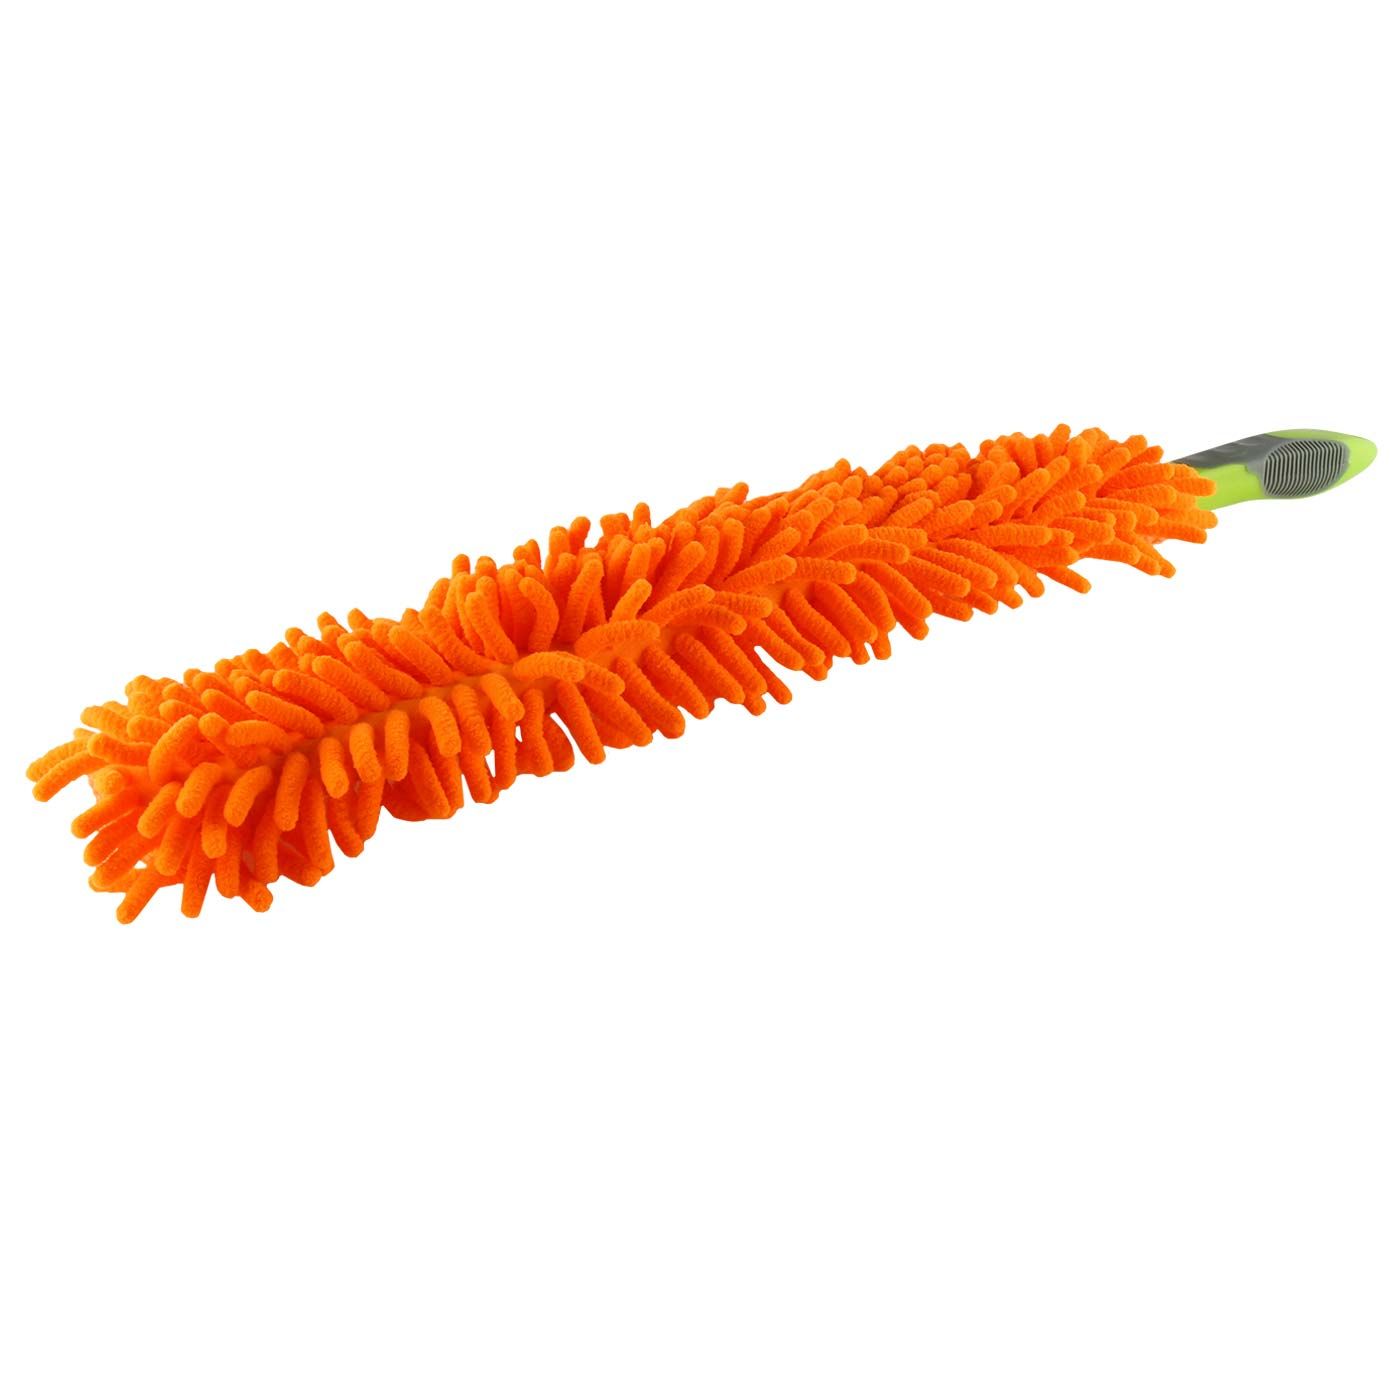 Bling Chenille Flexible Multipurpose Duster - Orange - 2